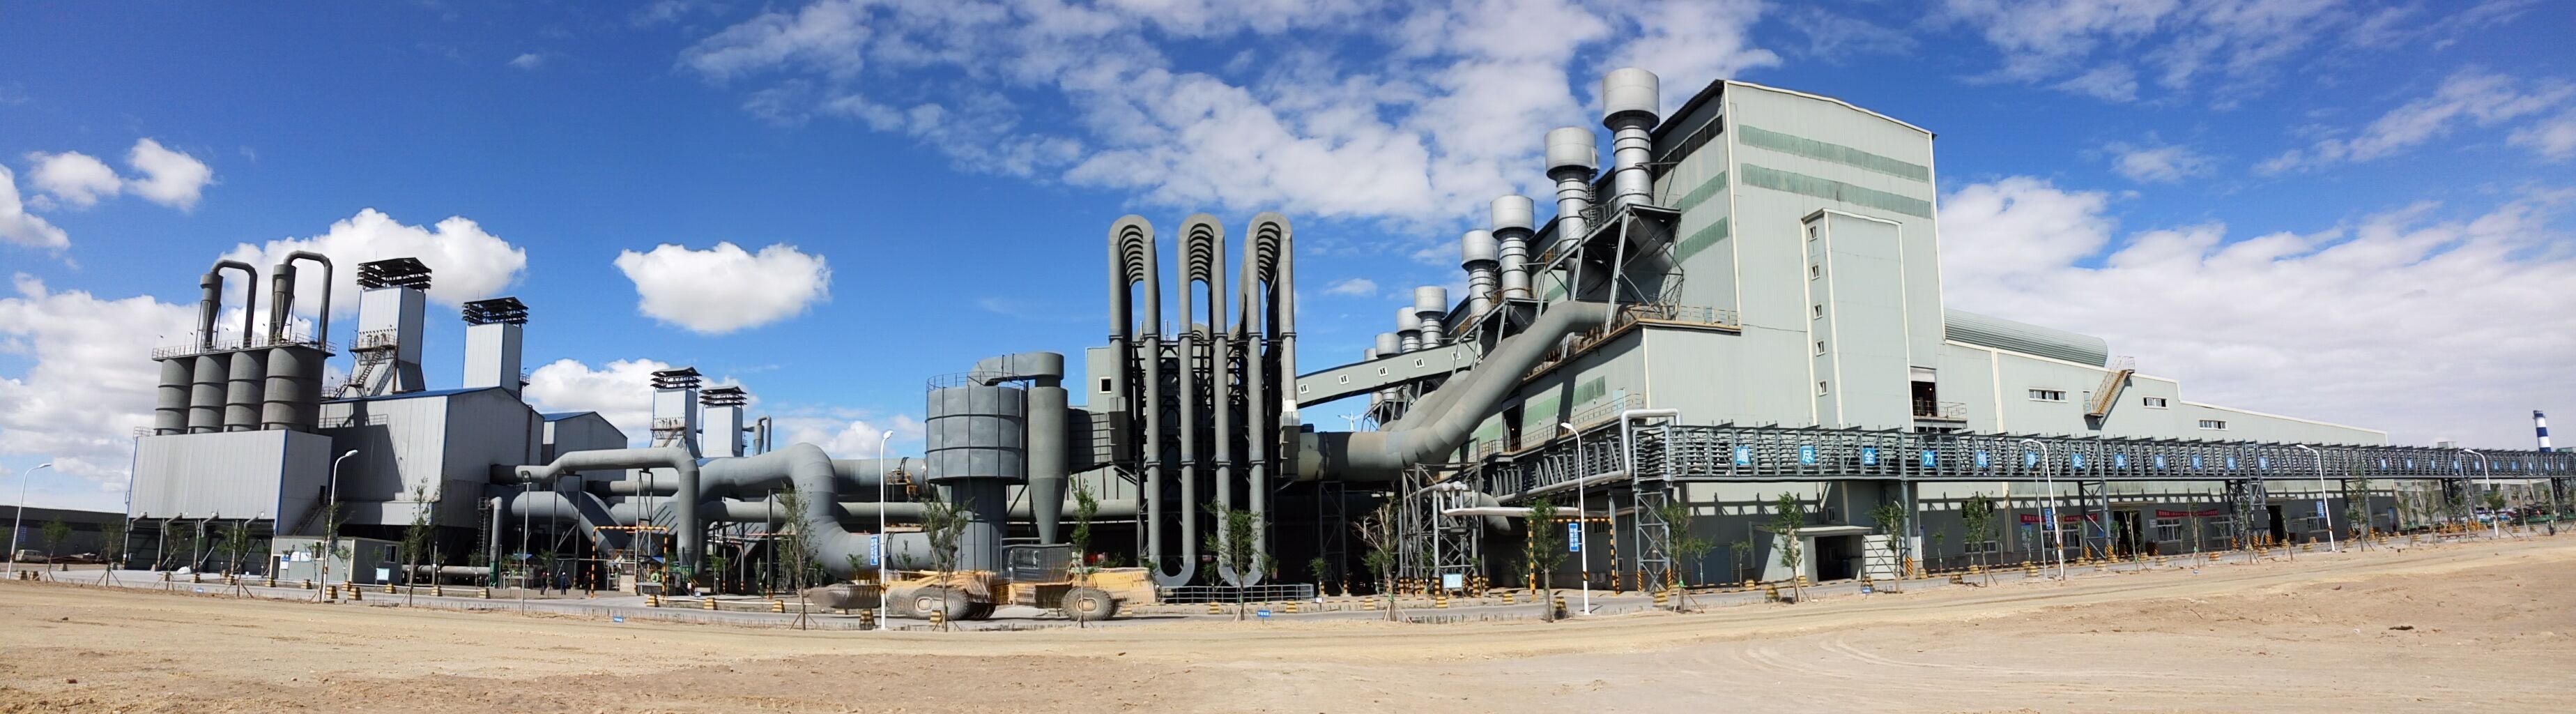 1-33000kVA工業硅礦熱爐煙氣凈化除塵系統工程